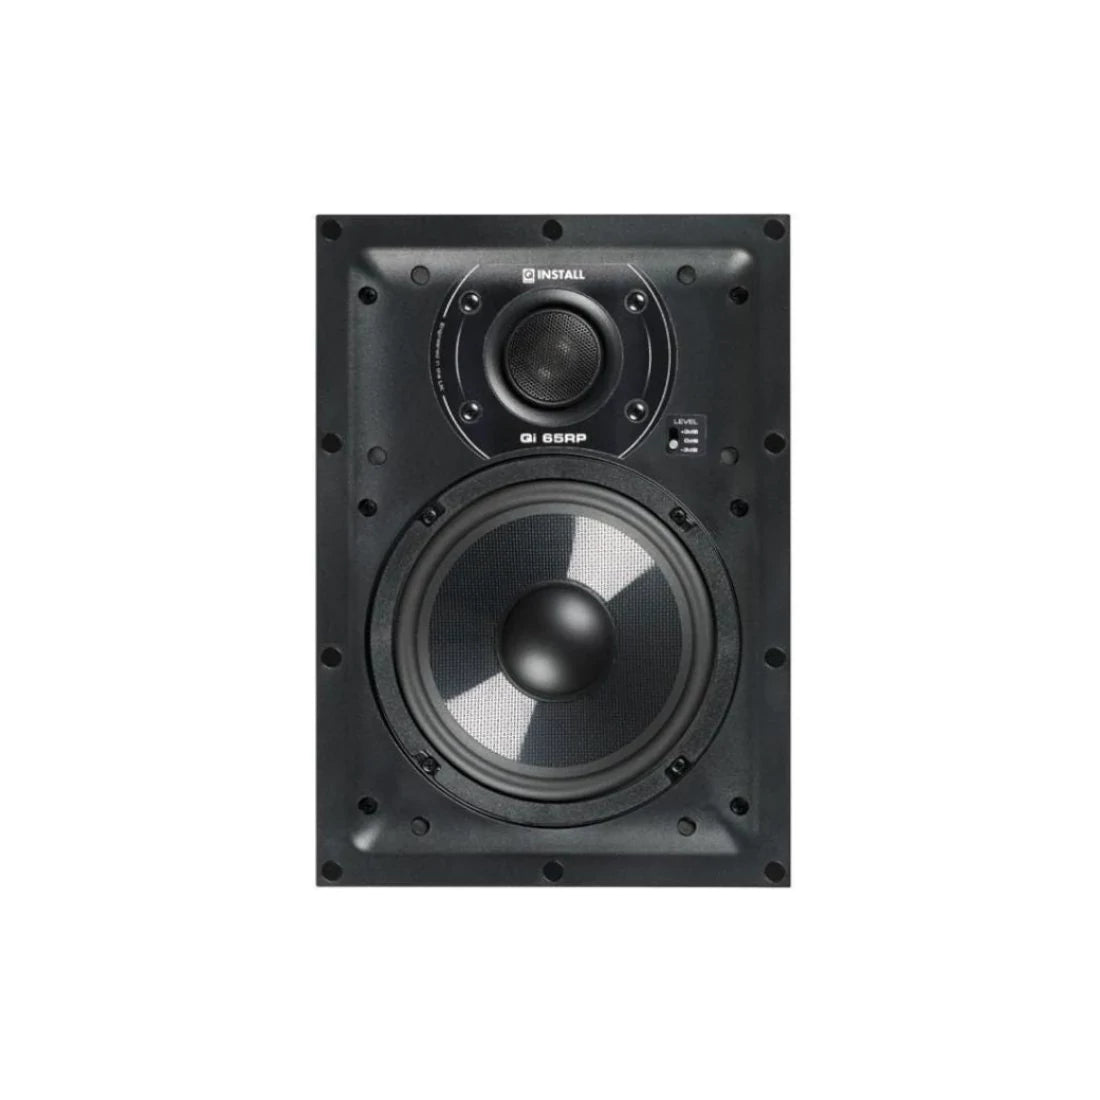 Q Acoustics Q Install QI 65RP 6.5" In-Wall Speaker 